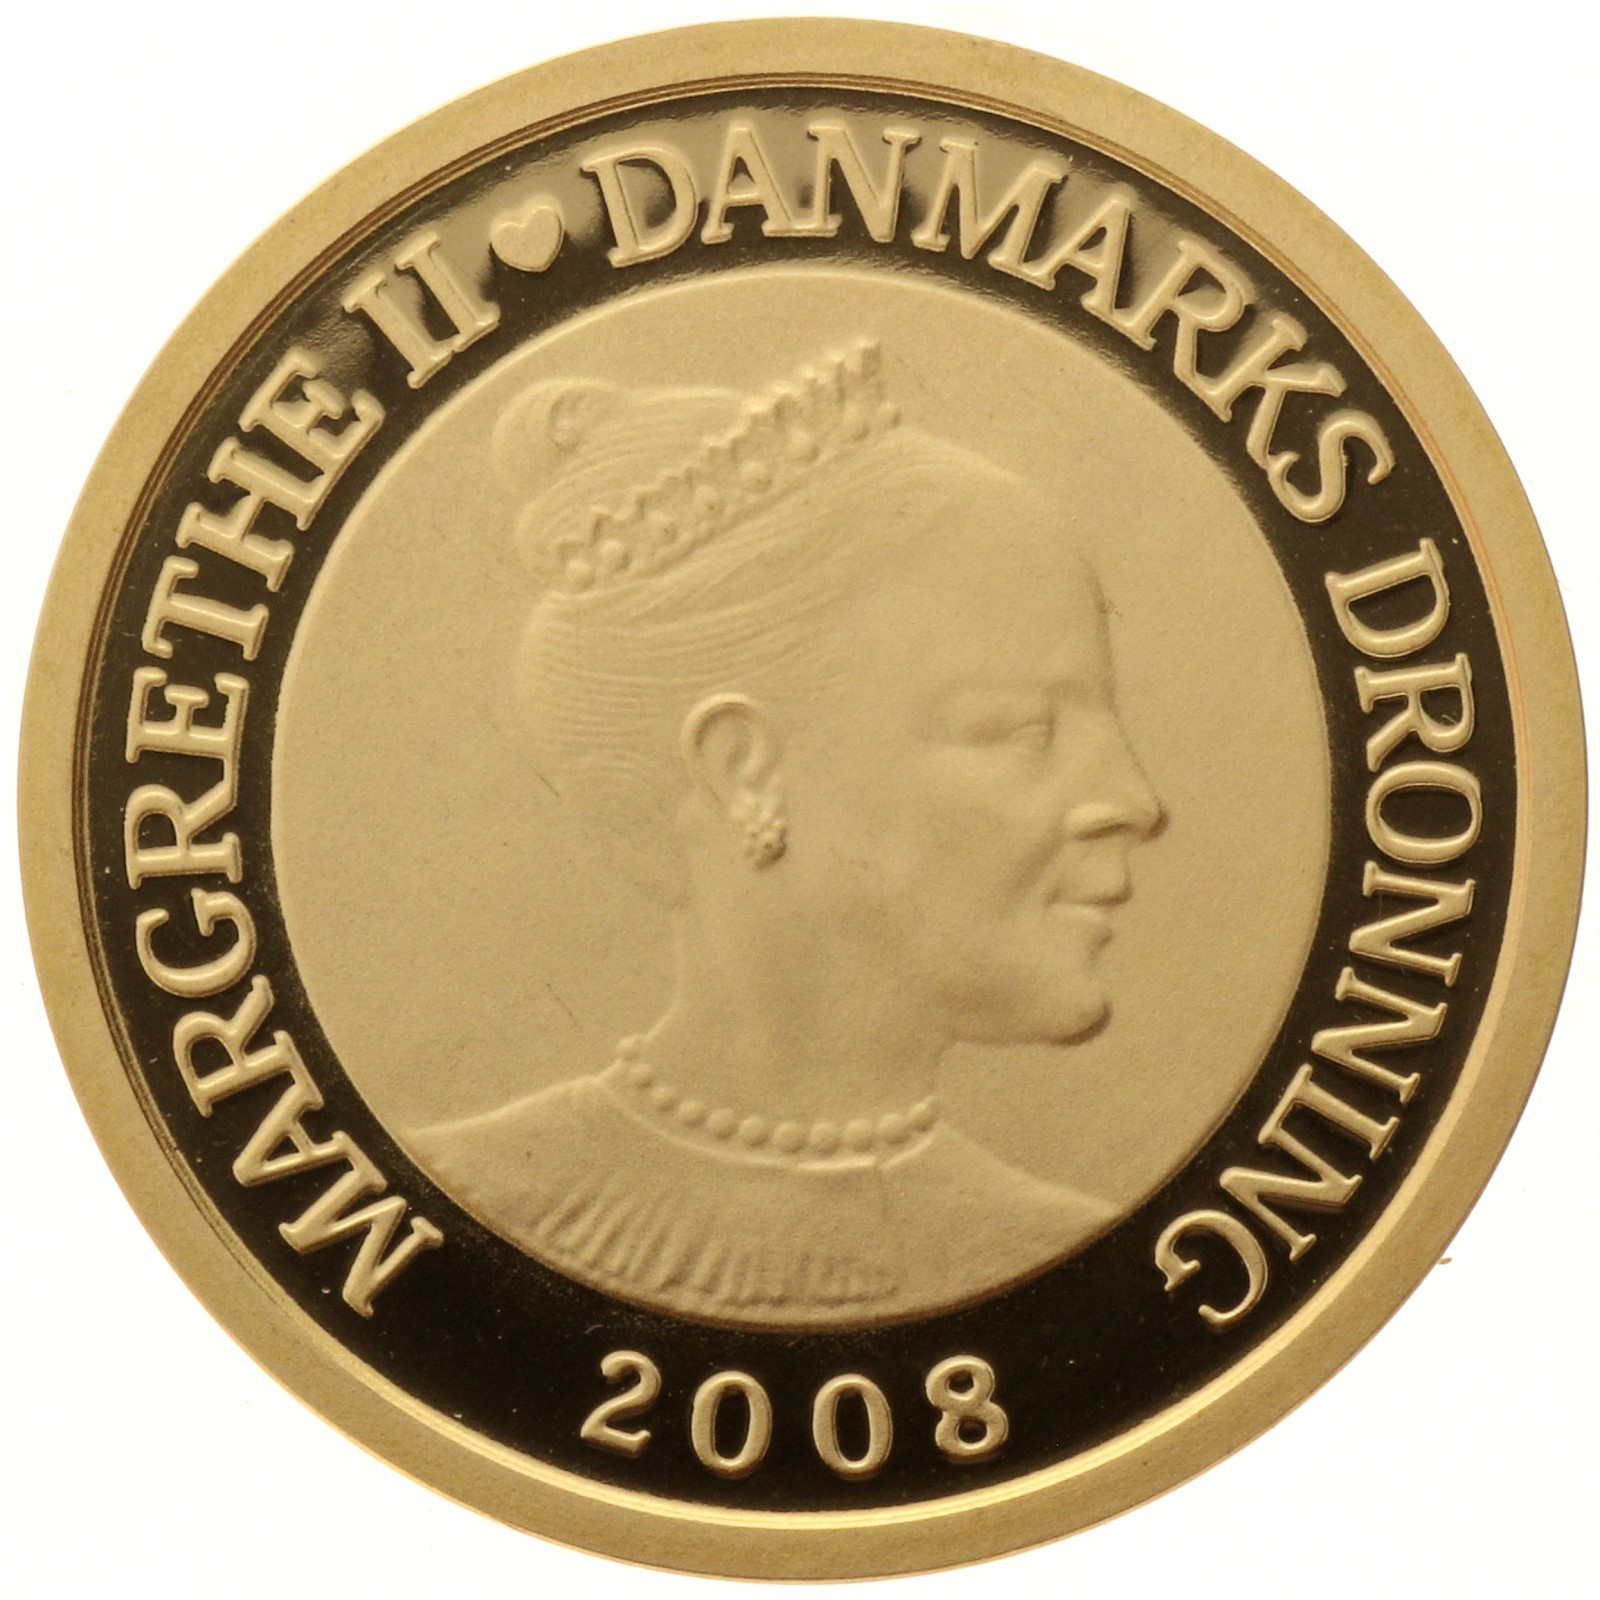 Denmark - 1000 kroner - 2008 - Sirius - Margrethe II - 1/4oz